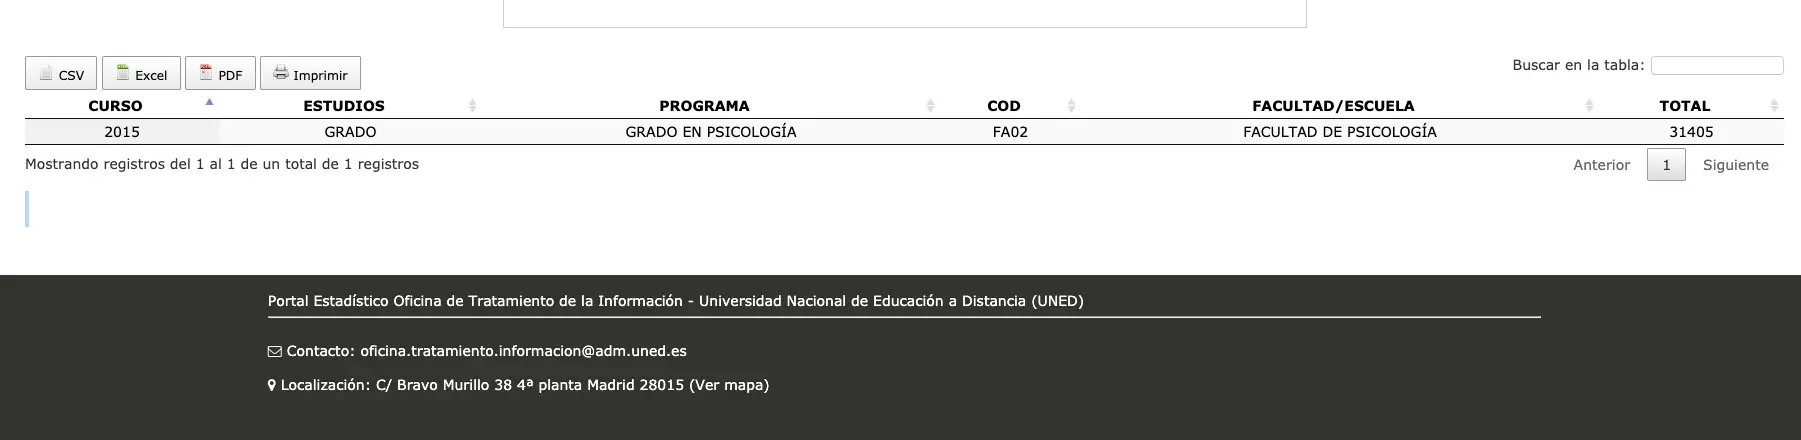 Captura de pantalla 2019 11 04 a las 15.42.49 Más de 1.400 Graduados en Psicología en la UNED en el curso 2017-2018